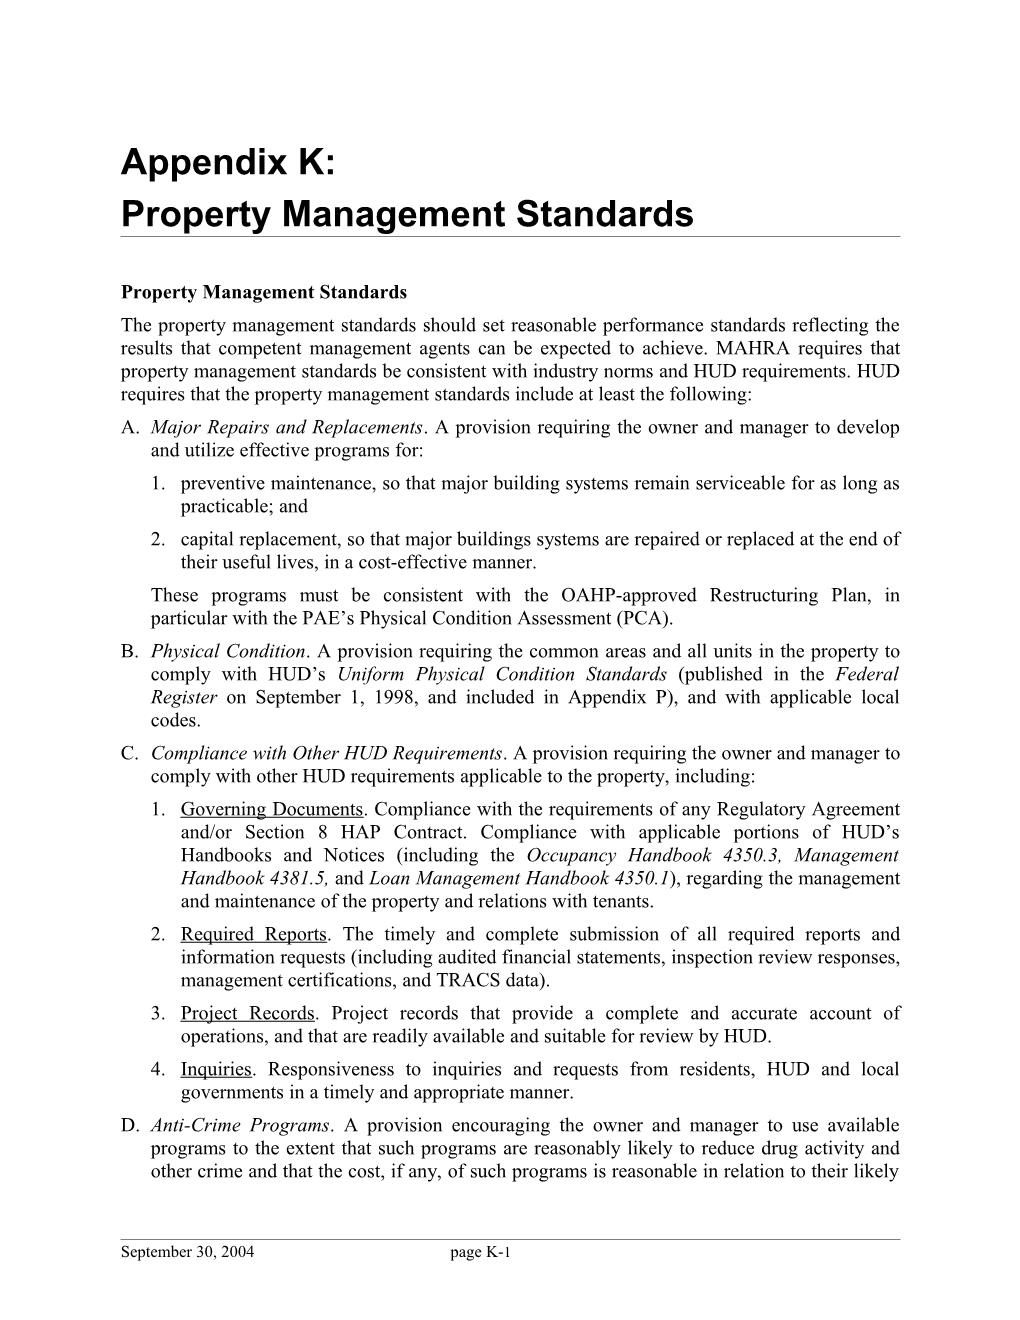 Property Management Standards